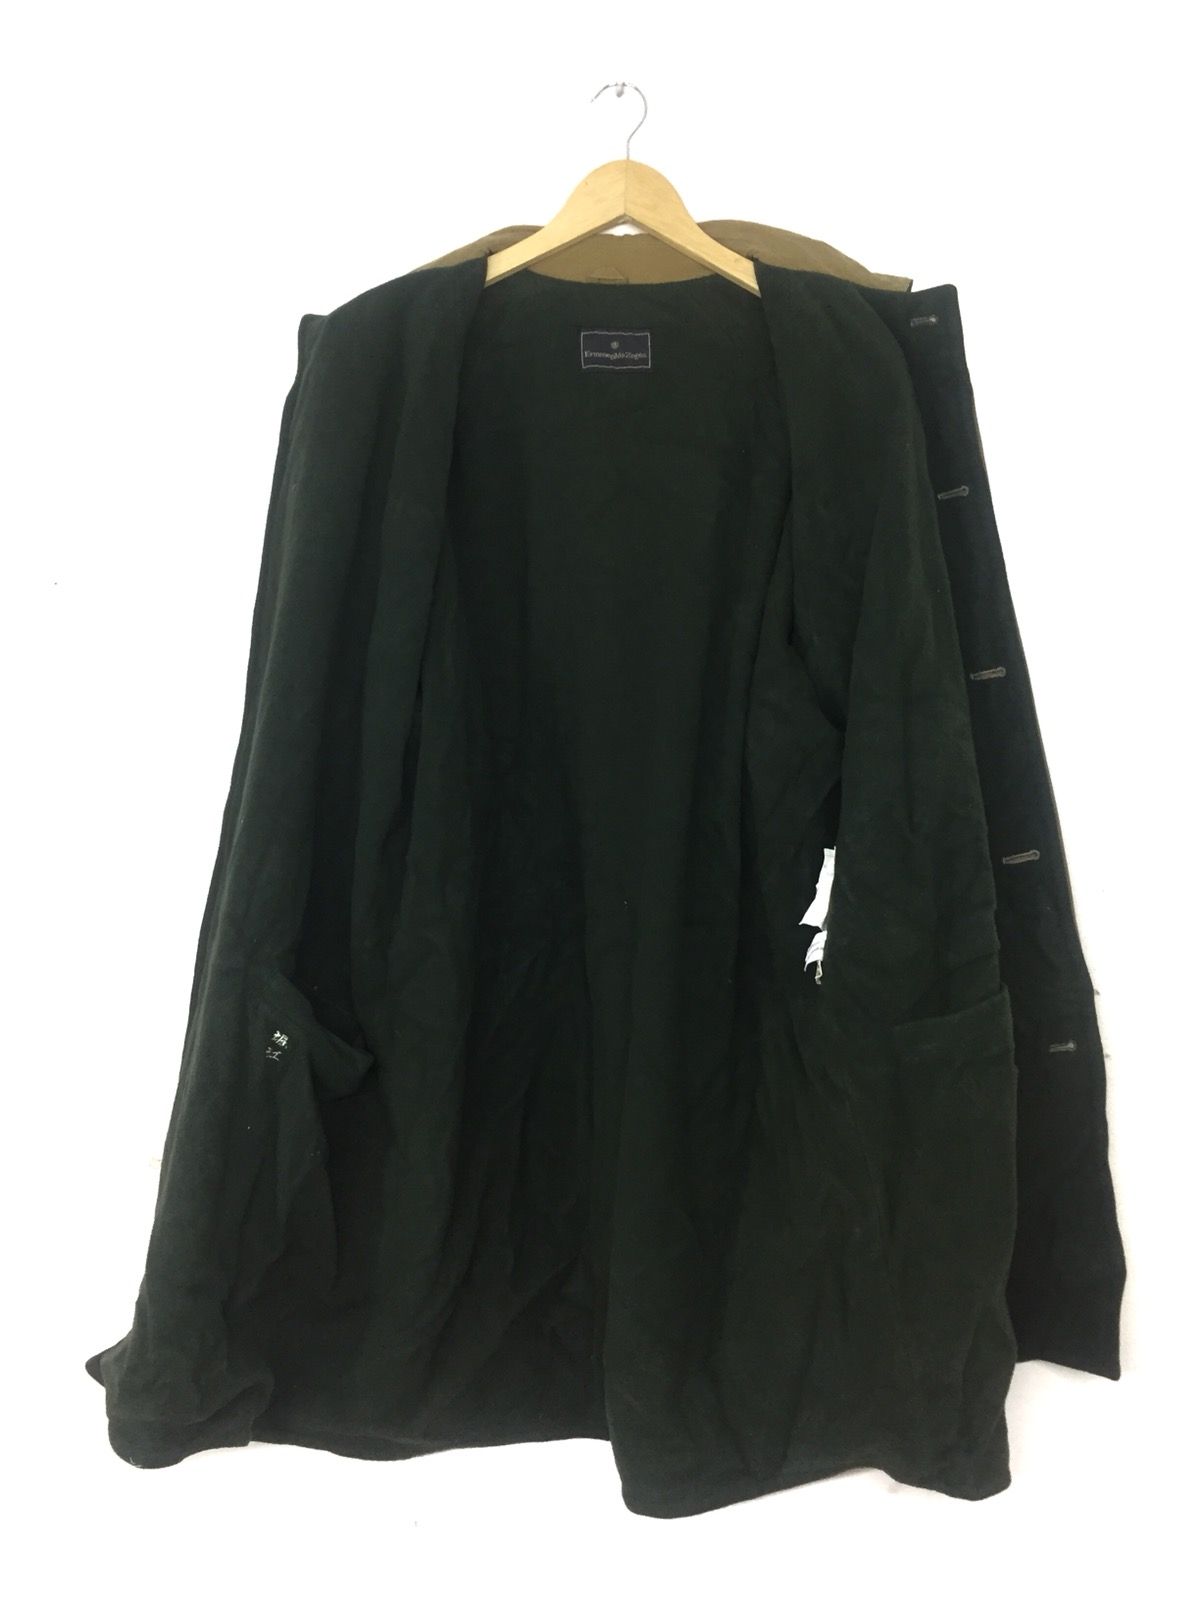 Ermenegildo Zegna Winter Classic Long Coat Jacket - 3